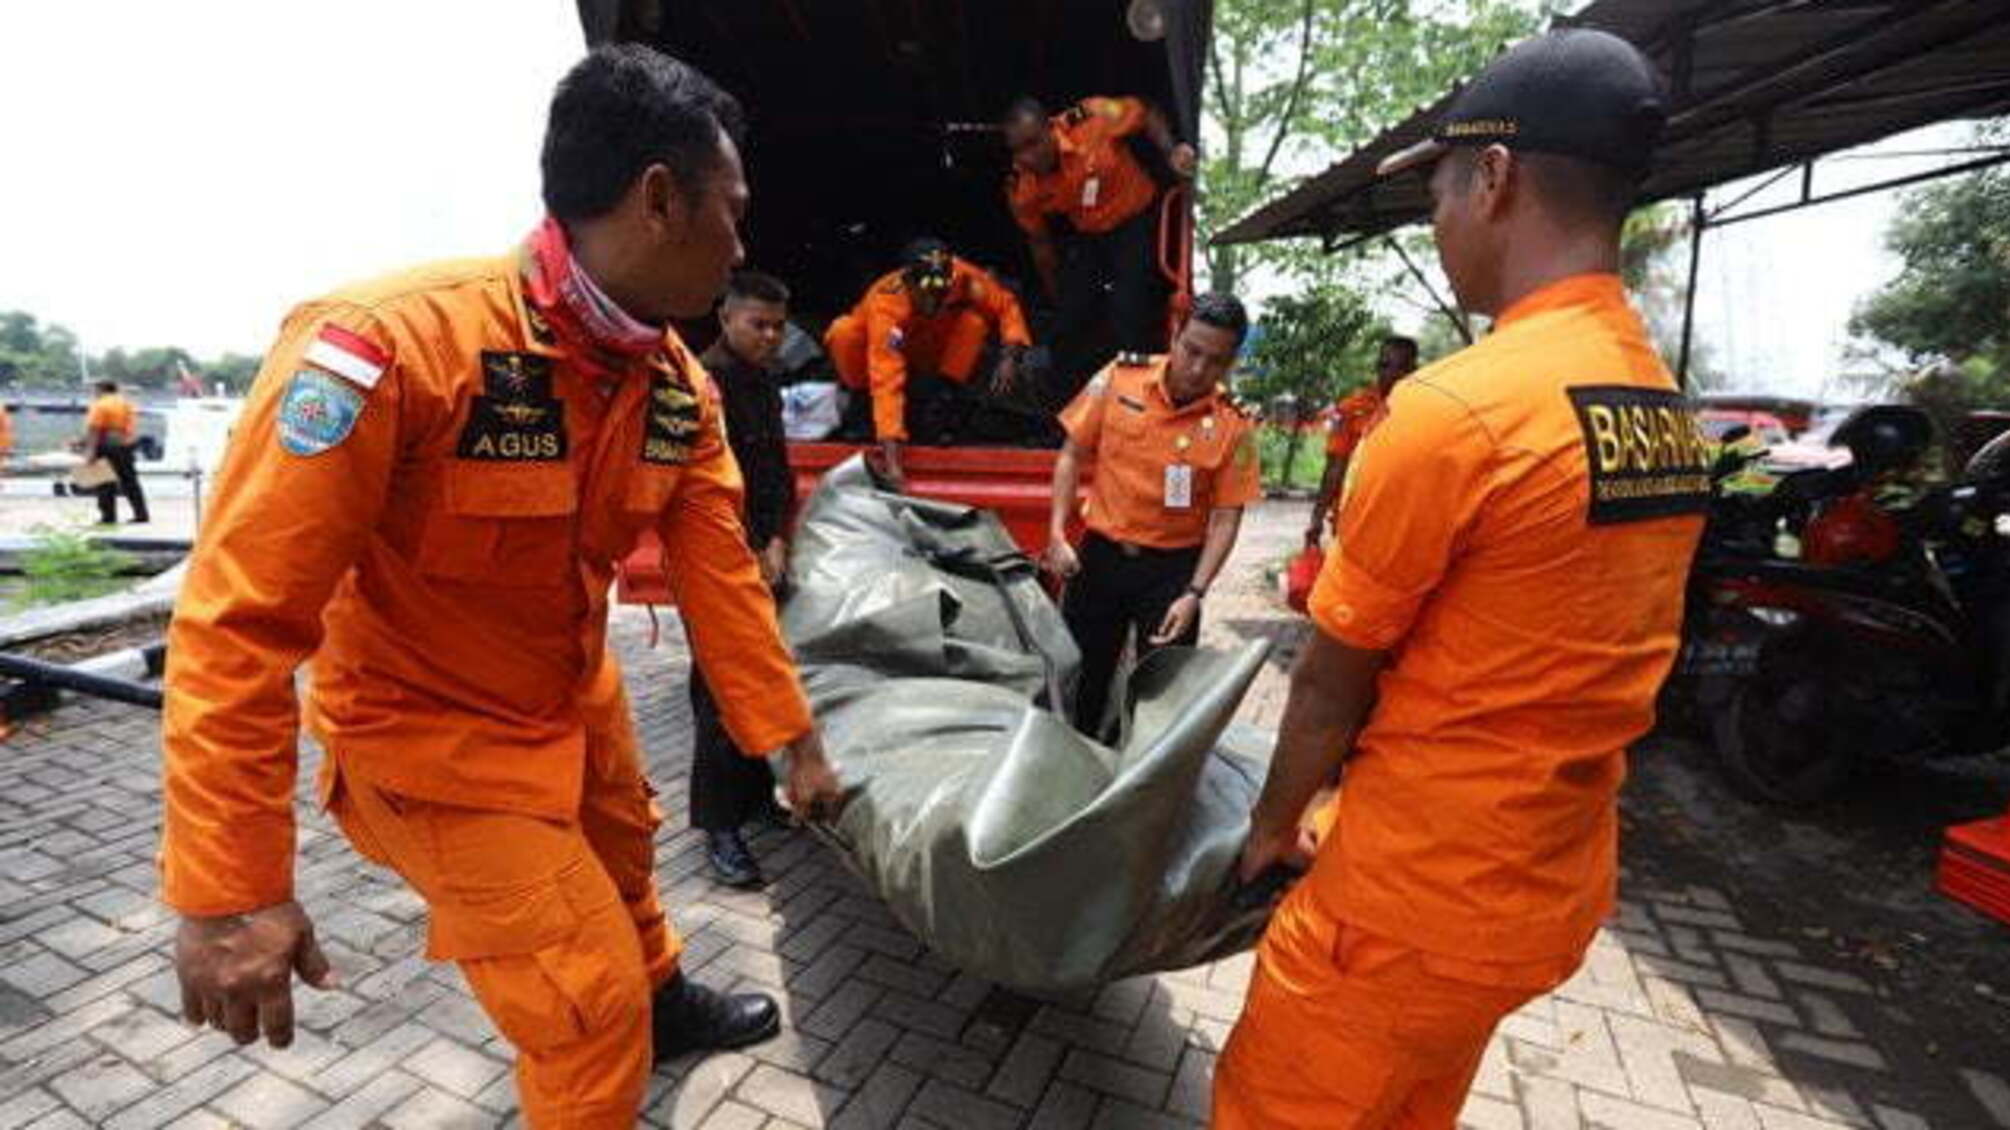 Останні новини та головні подробиці падіння Boeing 737 в Індонезії (ФОТО)